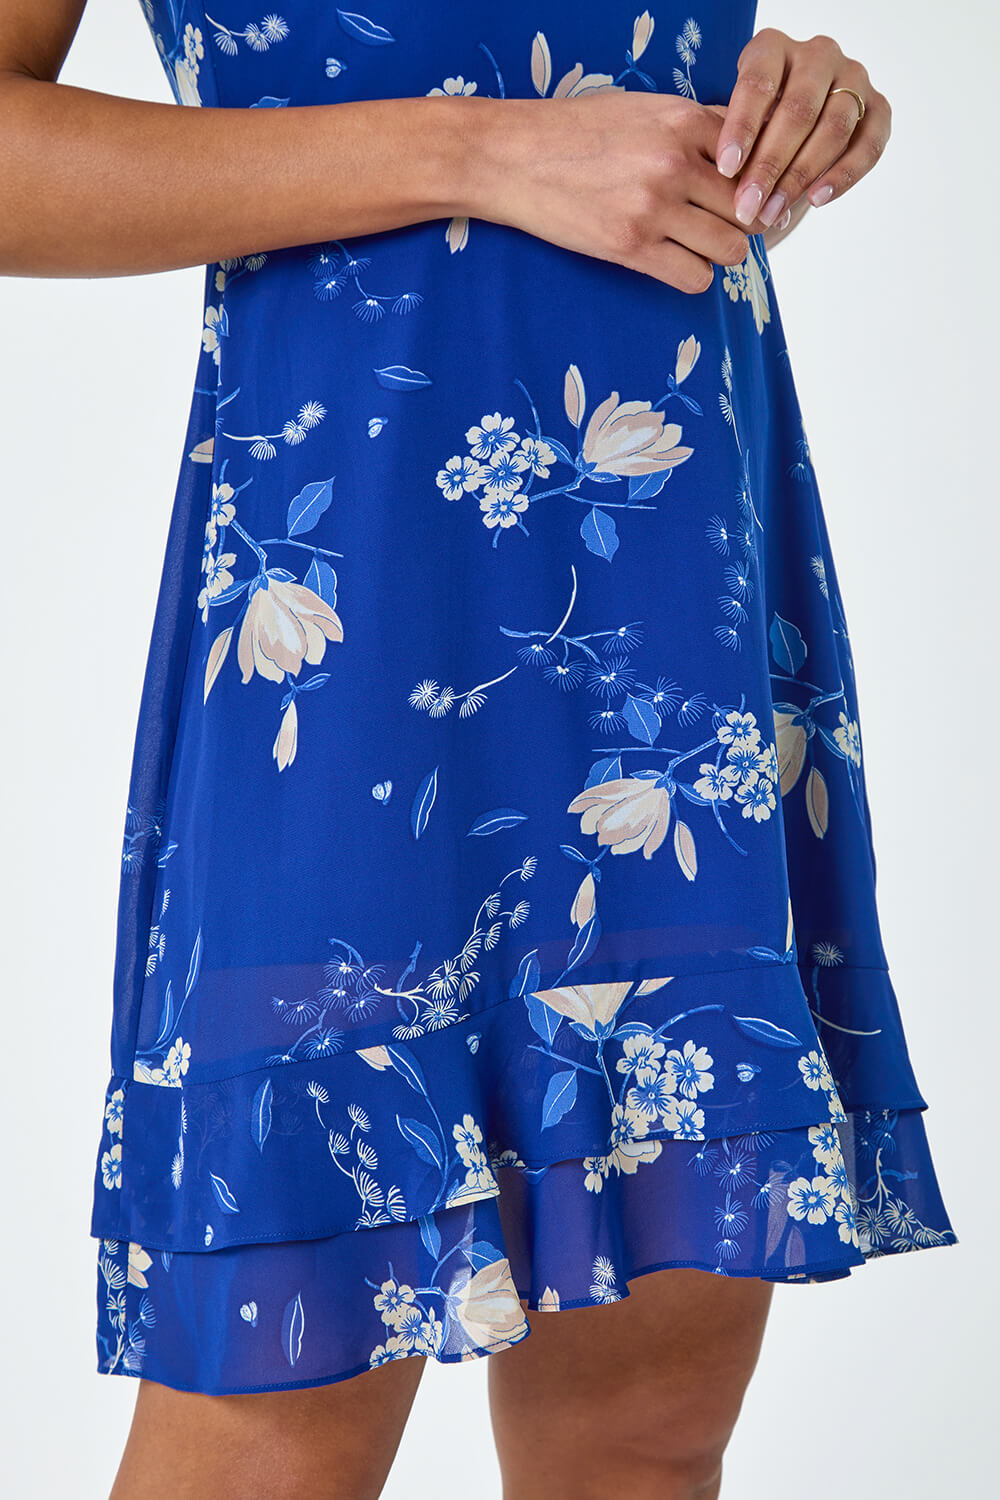 Blue Floral Print Frill Detailed Skater Dress, Image 5 of 5